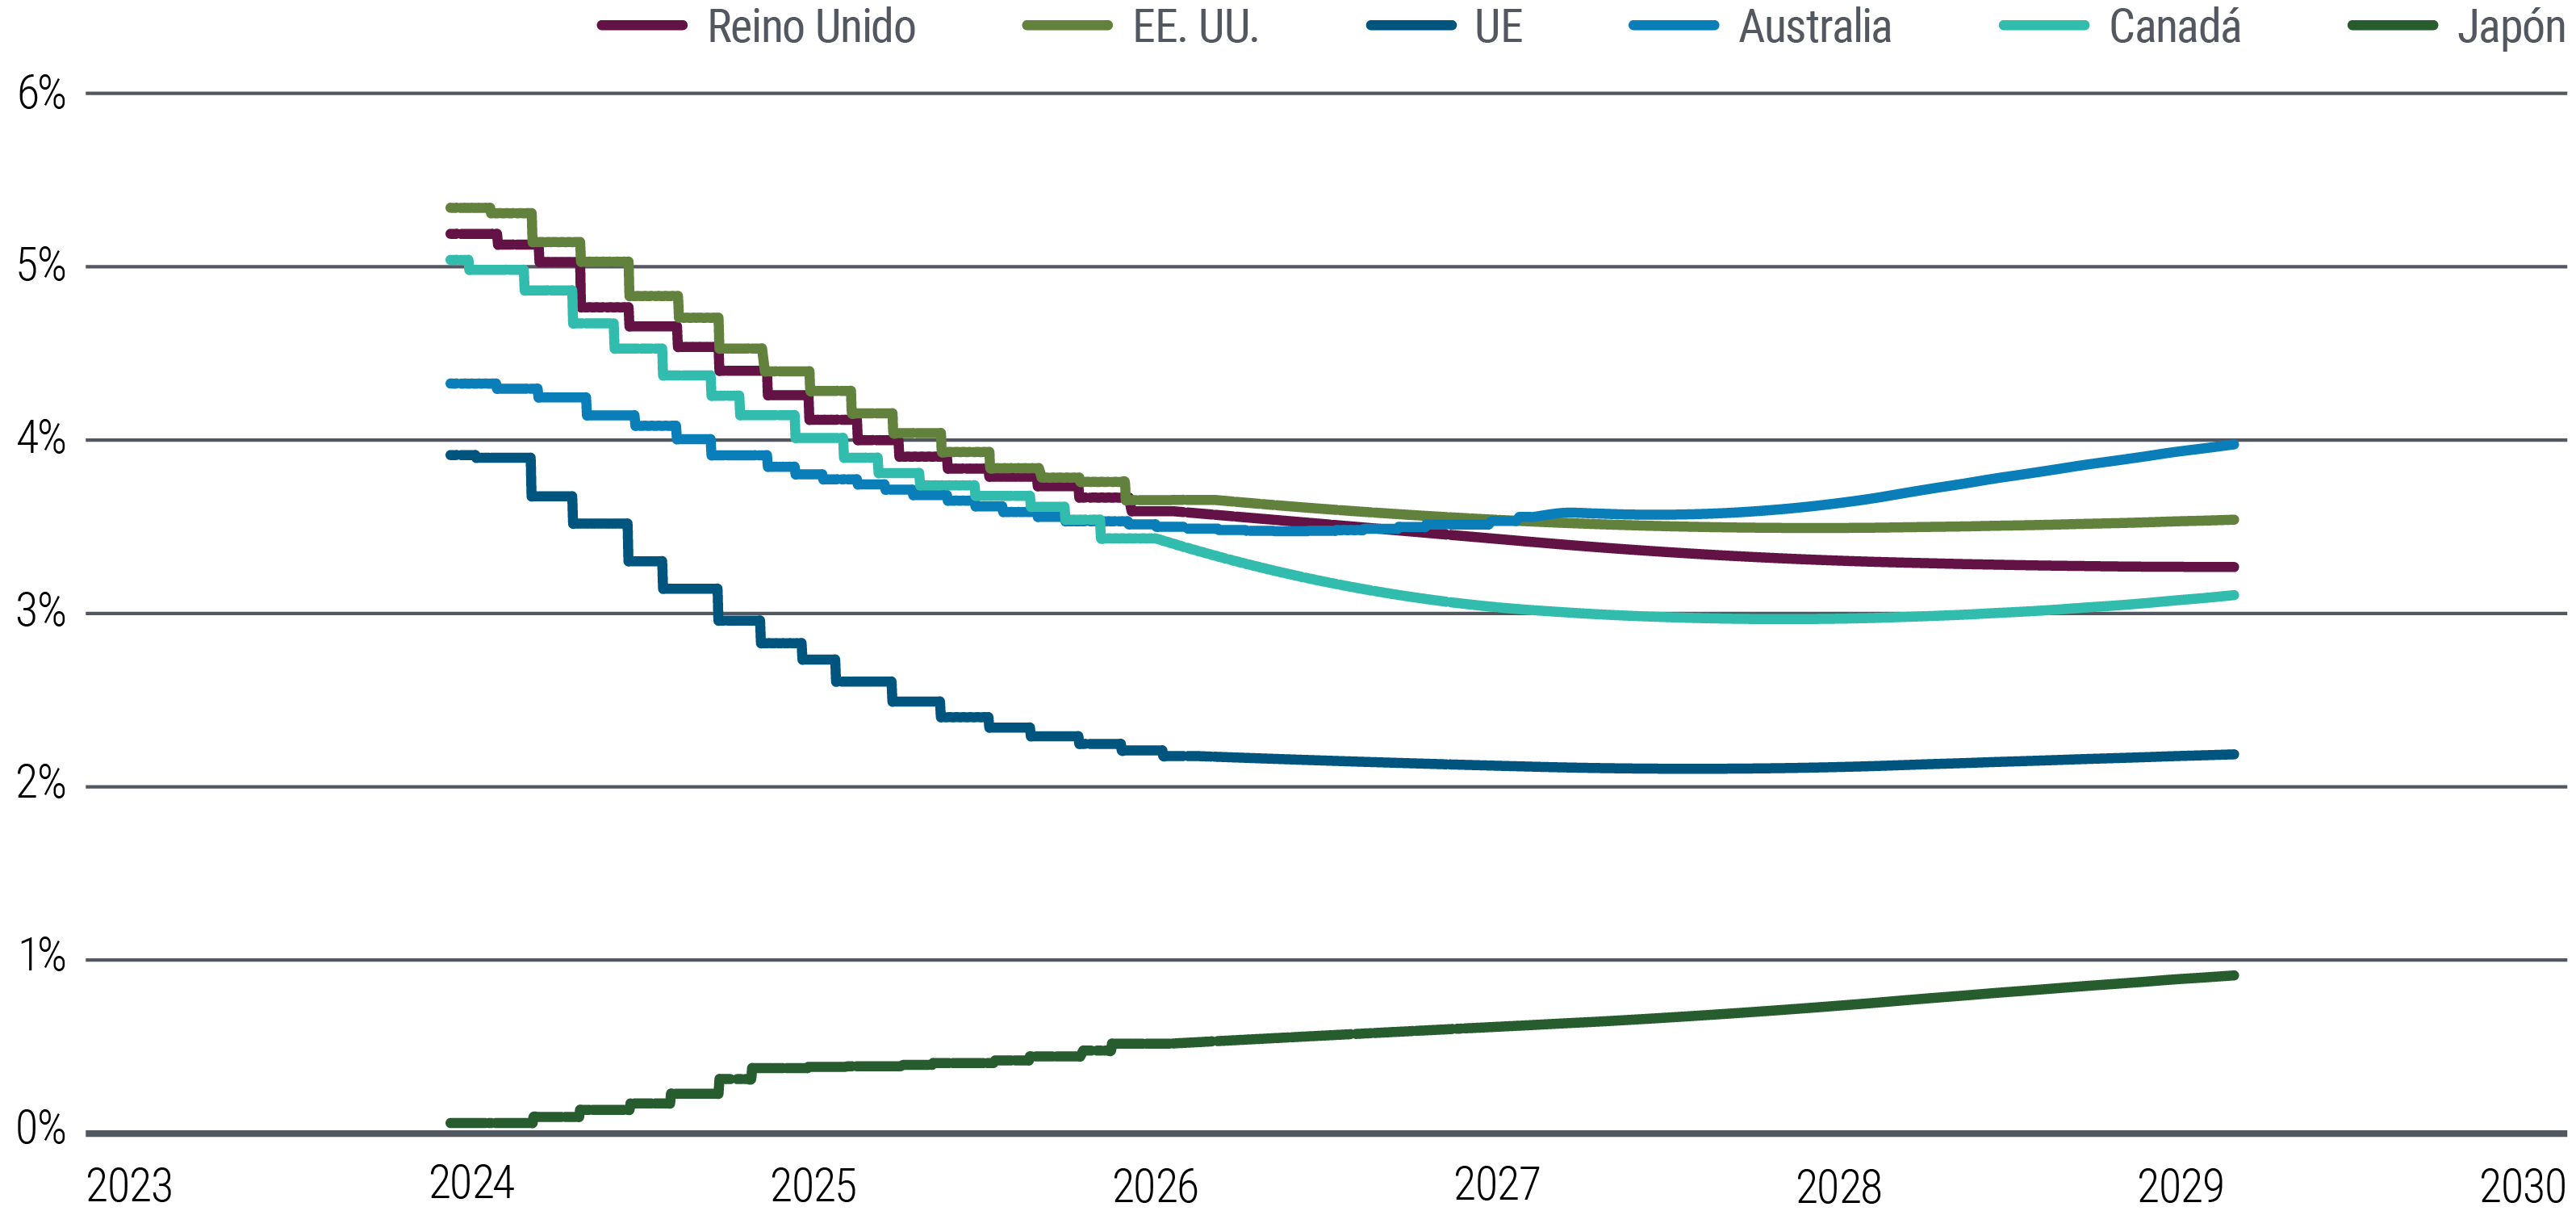 El gráfico 5 es un gráfico de líneas que muestra los precios a marzo de 2024 de los tipos de interés forward a corto plazo en EE. UU., la eurozona, Reino Unido, Japón, Australia y Canadá hasta principios de 2029, como indicador de las estimaciones del mercado sobre los tipos de interés terminales. Los mercados descuentan que los tipos forward a corto plazo caerán gradualmente al menos hasta 2026 en todas estas economías, a excepción de Japón, y que luego se estabilizarán. Los tipos forward de EE. UU. se sitúan en torno a 3,6% en 2029, mientras que los de la eurozona rondan el 2,2%. En Japón, los tipos forward sugieren un aumento gradual y constante desde los niveles actuales, ligeramente por encima del 0%.